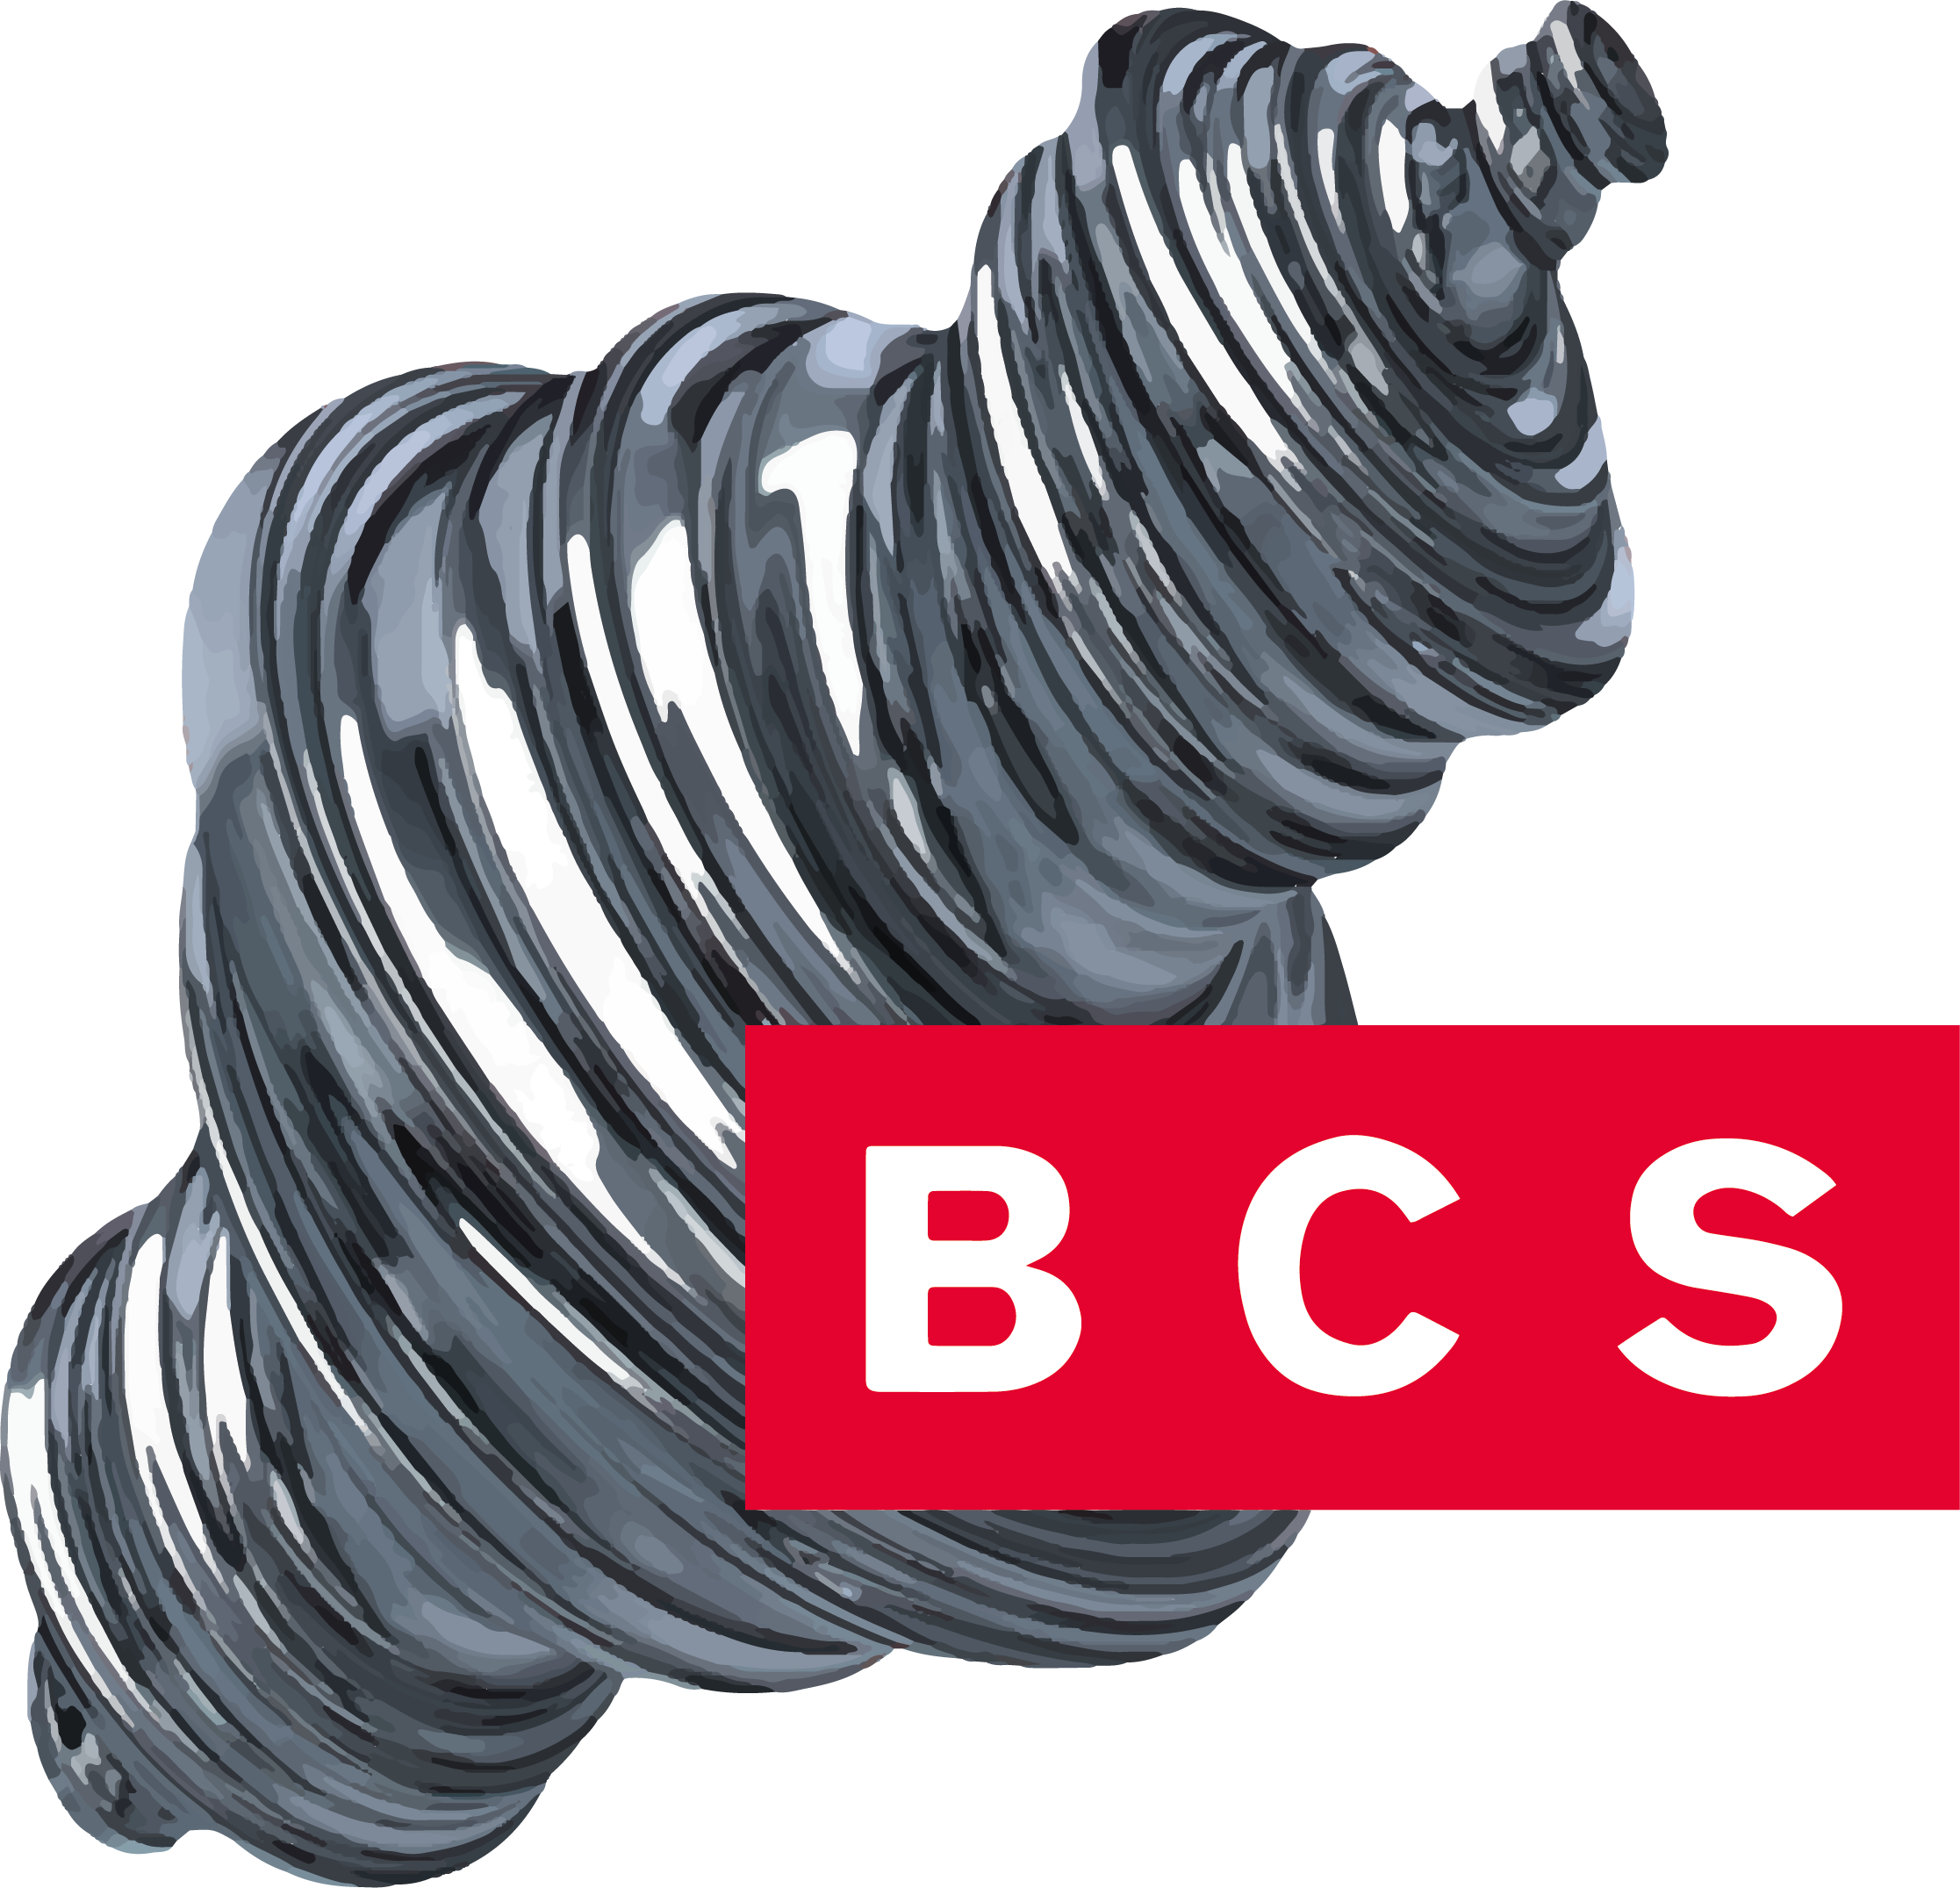 BCS dental alloys